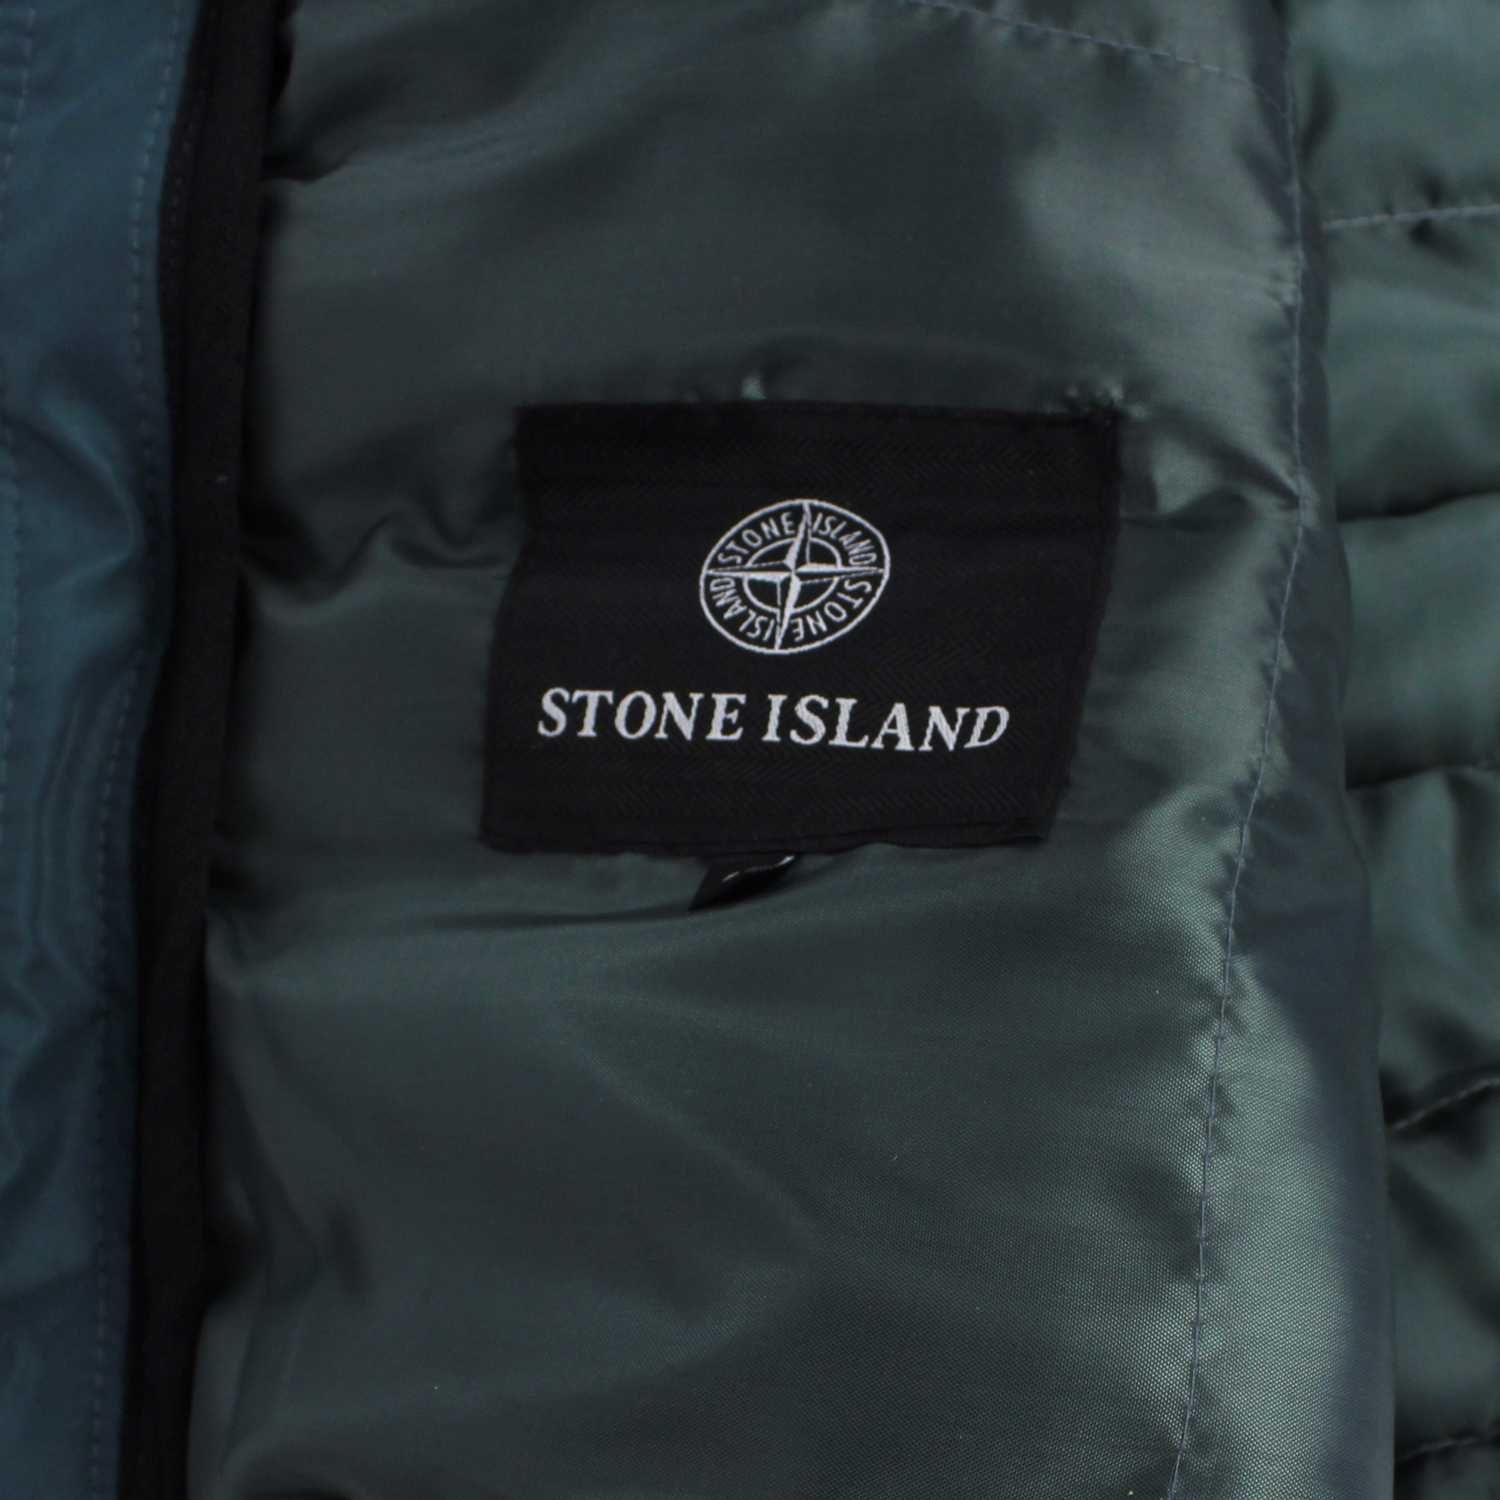 Жилетка Stone Island, цвет черный и бирюзовый, разные размеры